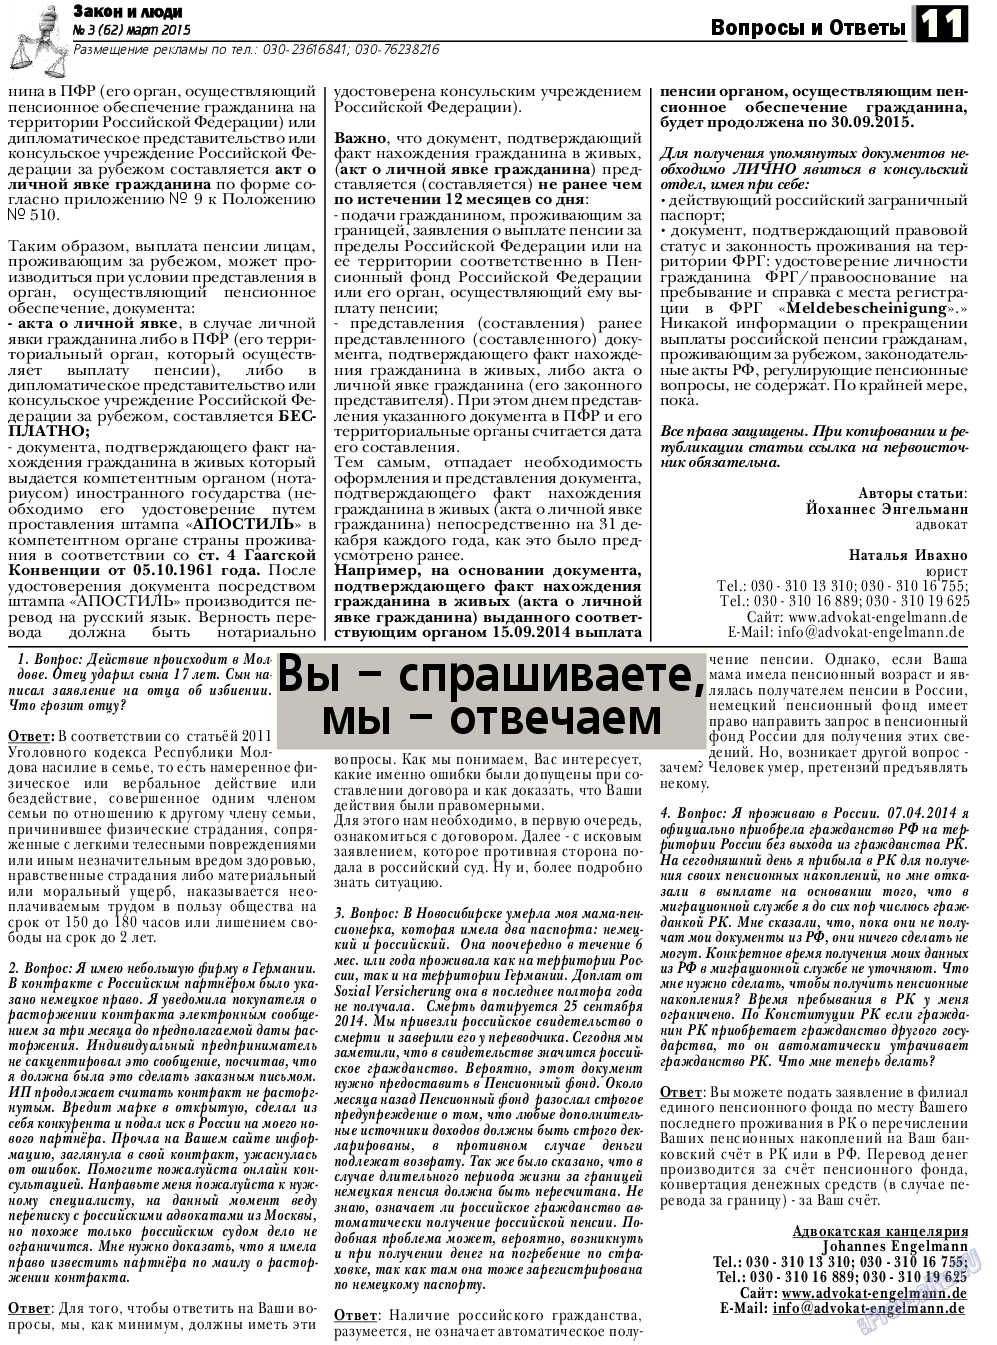 Закон и люди, газета. 2015 №3 стр.11